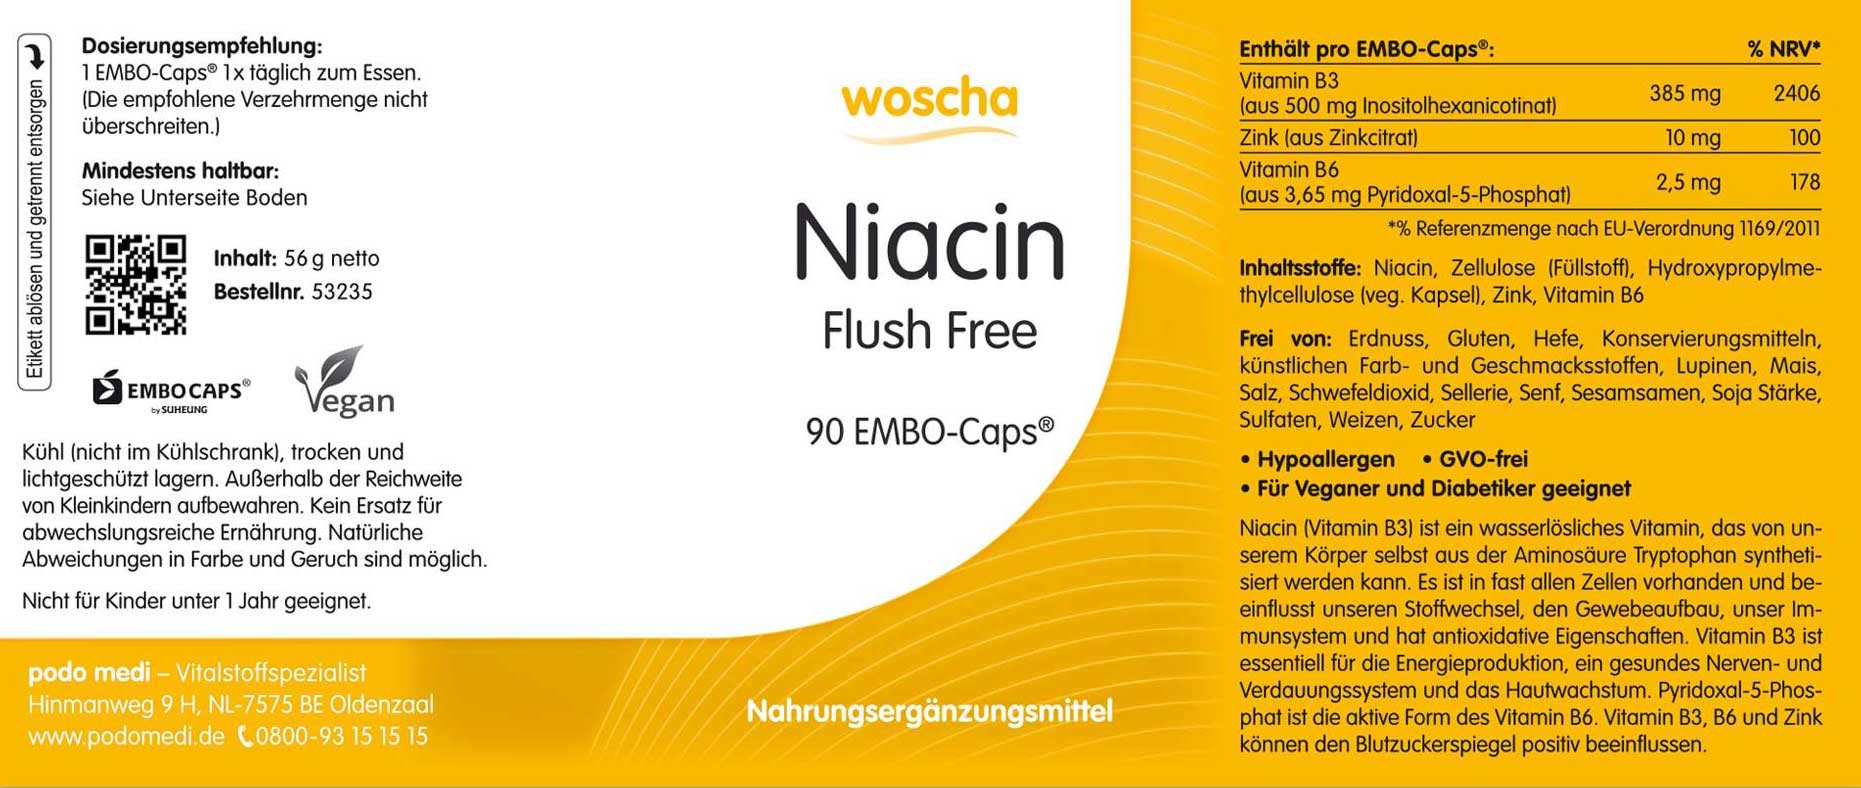 Woscha Niacin Flush Free von podo medi beinhaltet 90 Kapseln Etikett